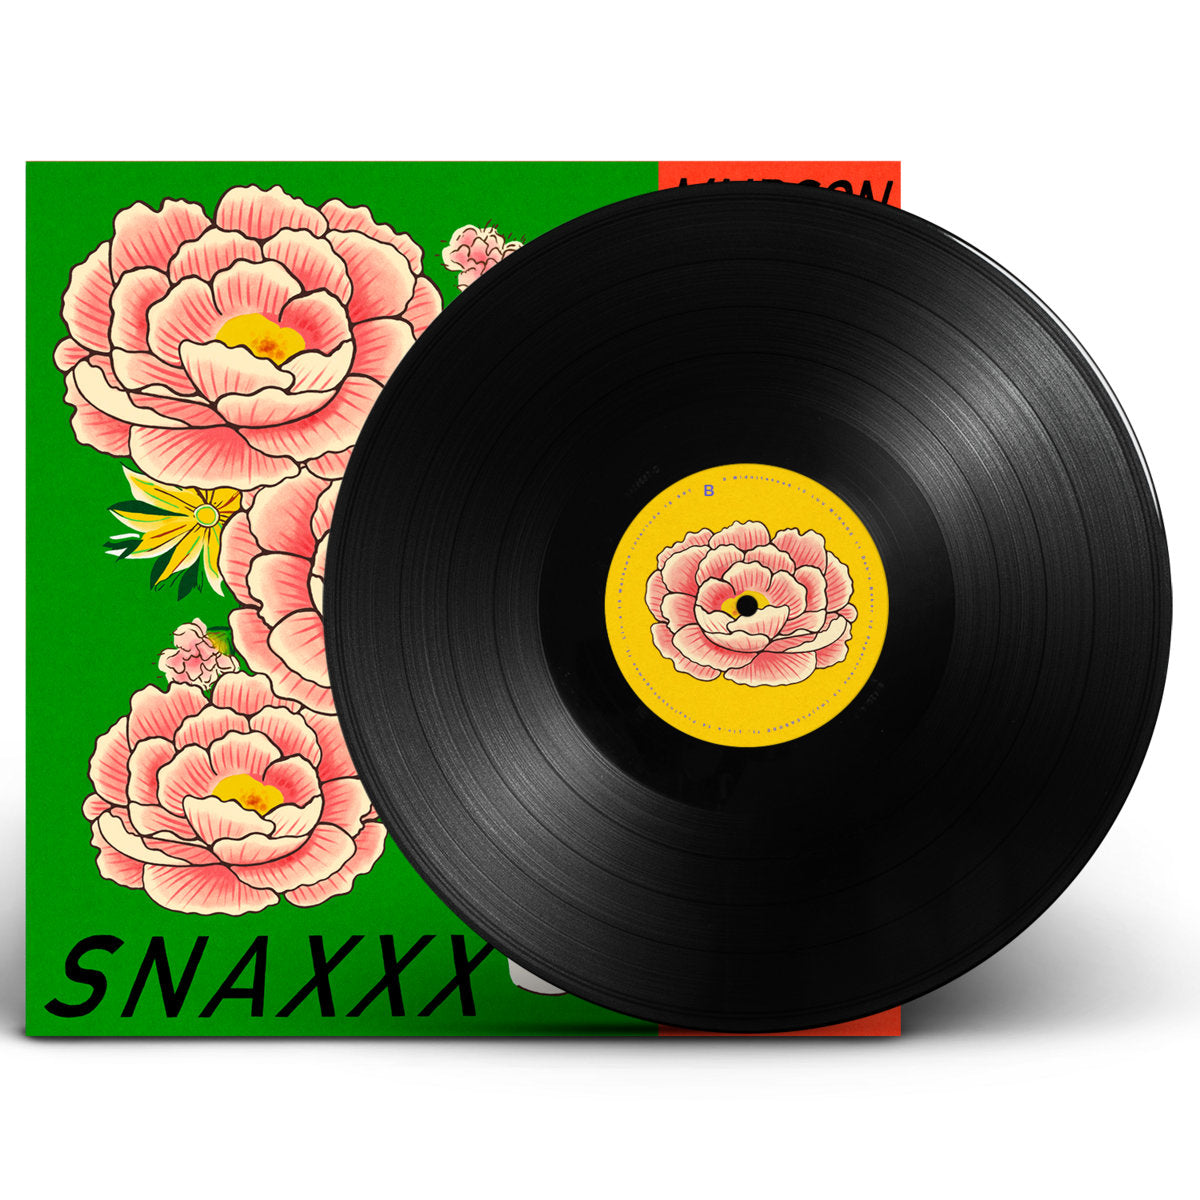 Mndsgn - Snaxxx: Vinyl LP